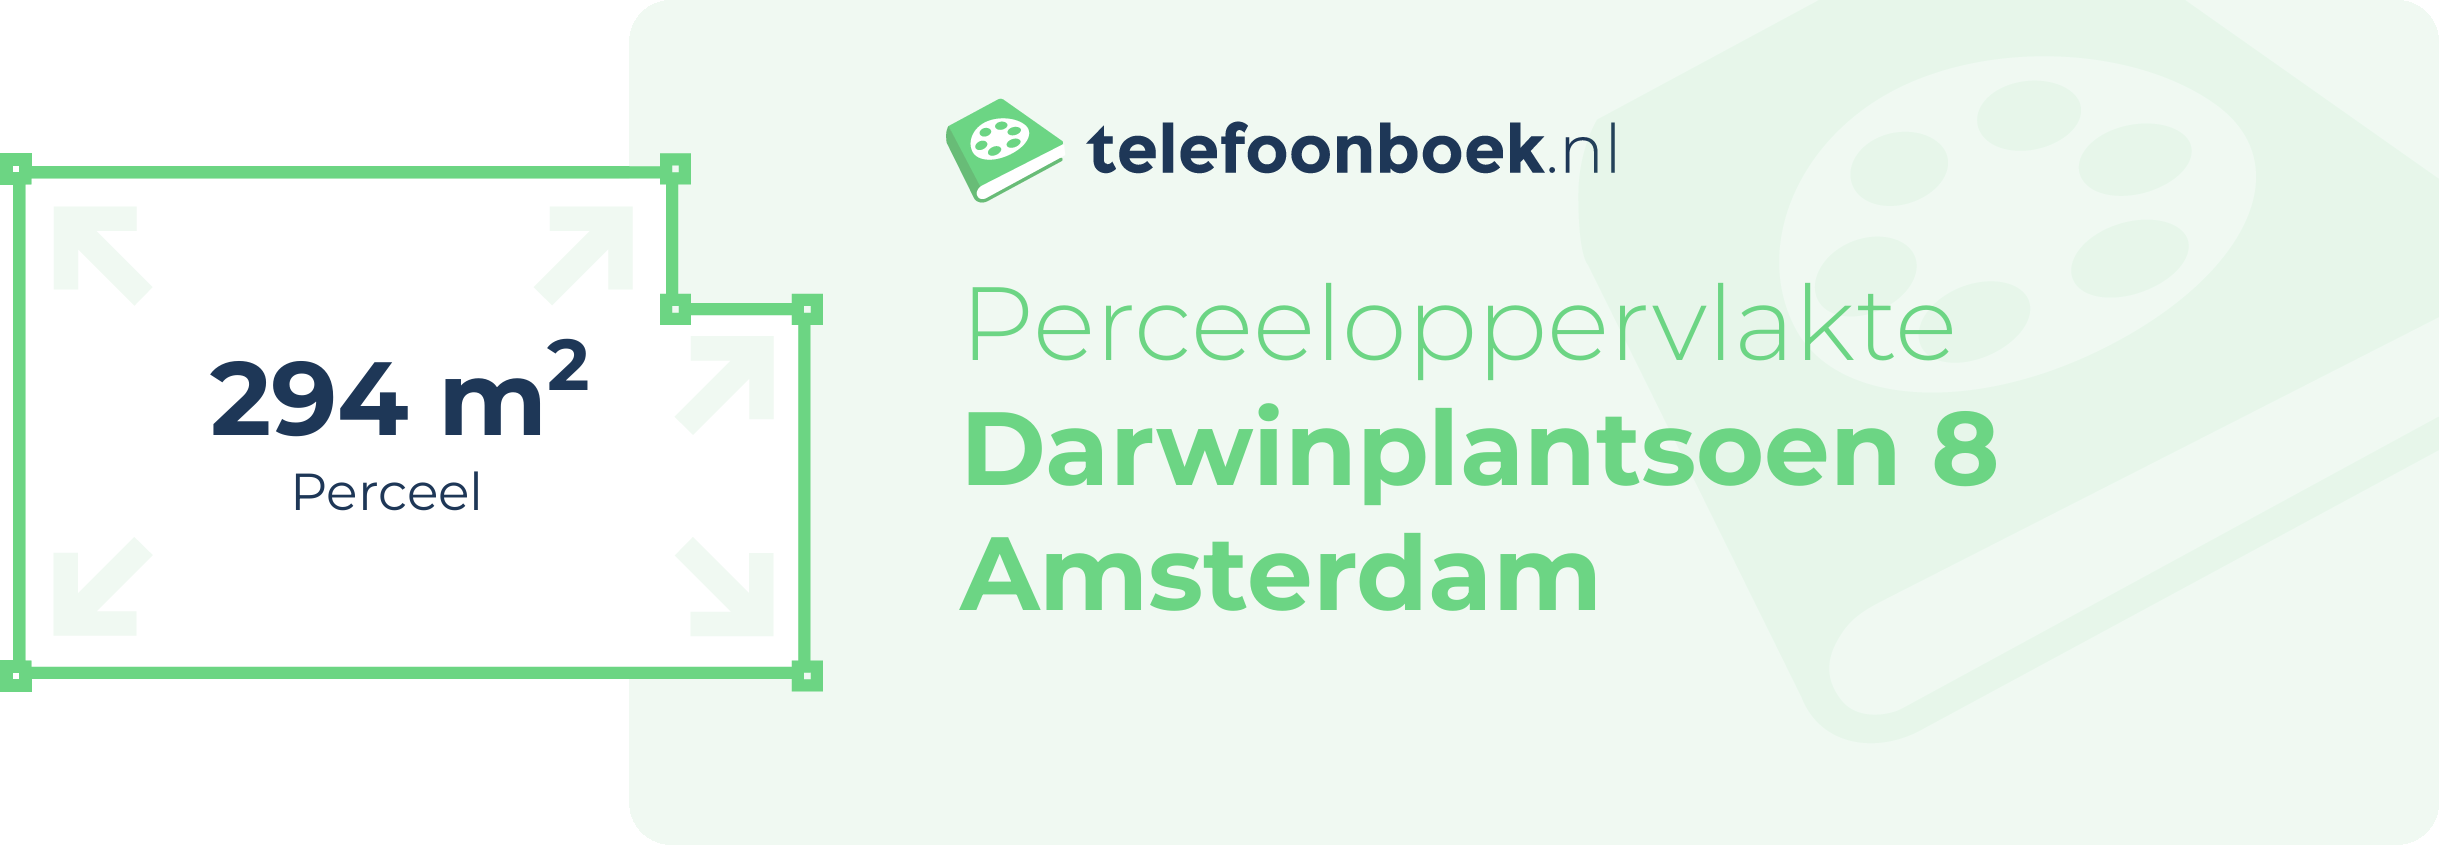 Perceeloppervlakte Darwinplantsoen 8 Amsterdam